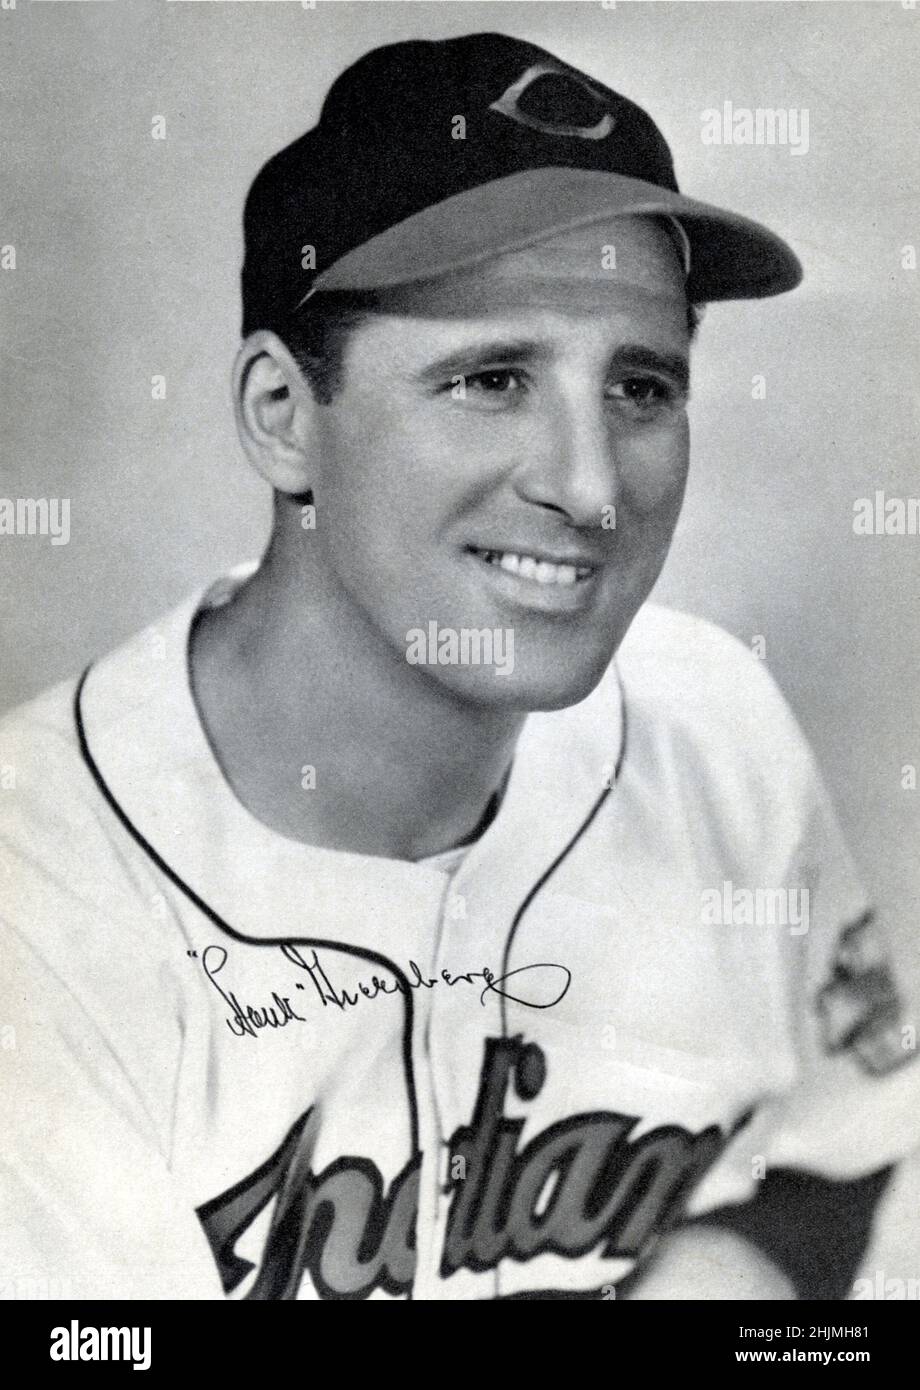 Erinnerungsfoto des Baseballspielers Hank Greenberg Stockfoto